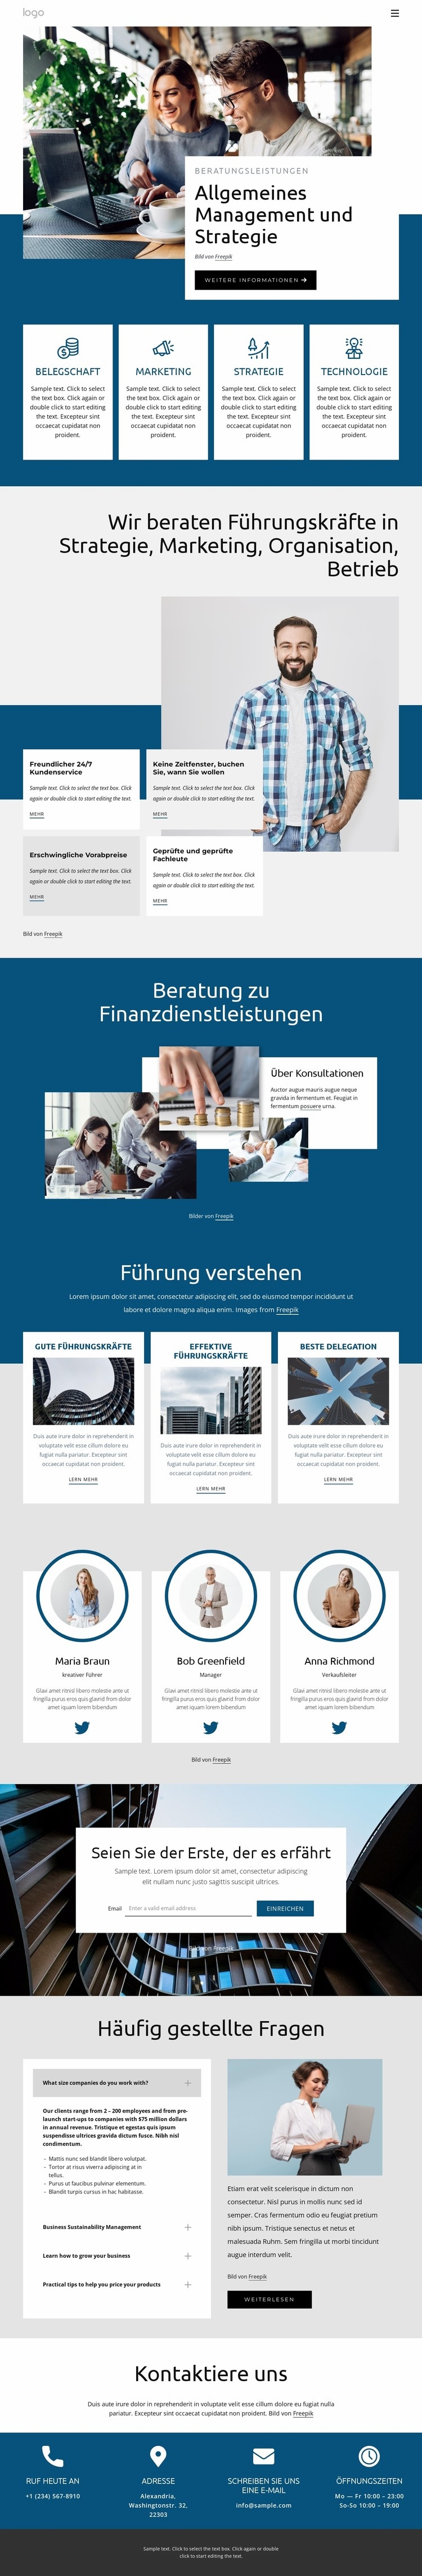 Allgemeine Managementstrategie Website design